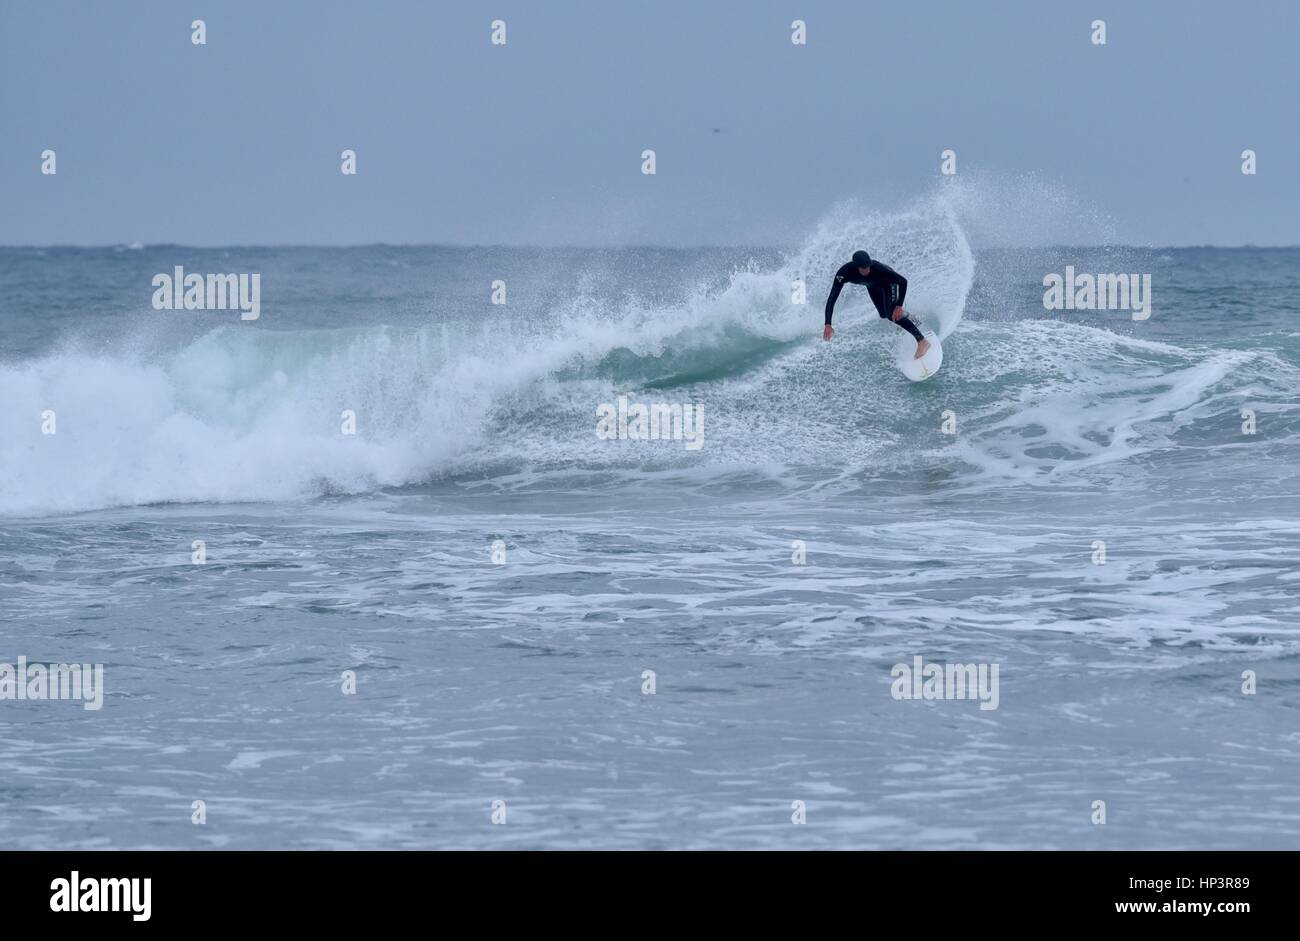 Surfer sur la vague en dépit des conditions météorologiques, et des vagues de surf haute rive sur accident de Mission Beach, San Diego, Californie. Banque D'Images